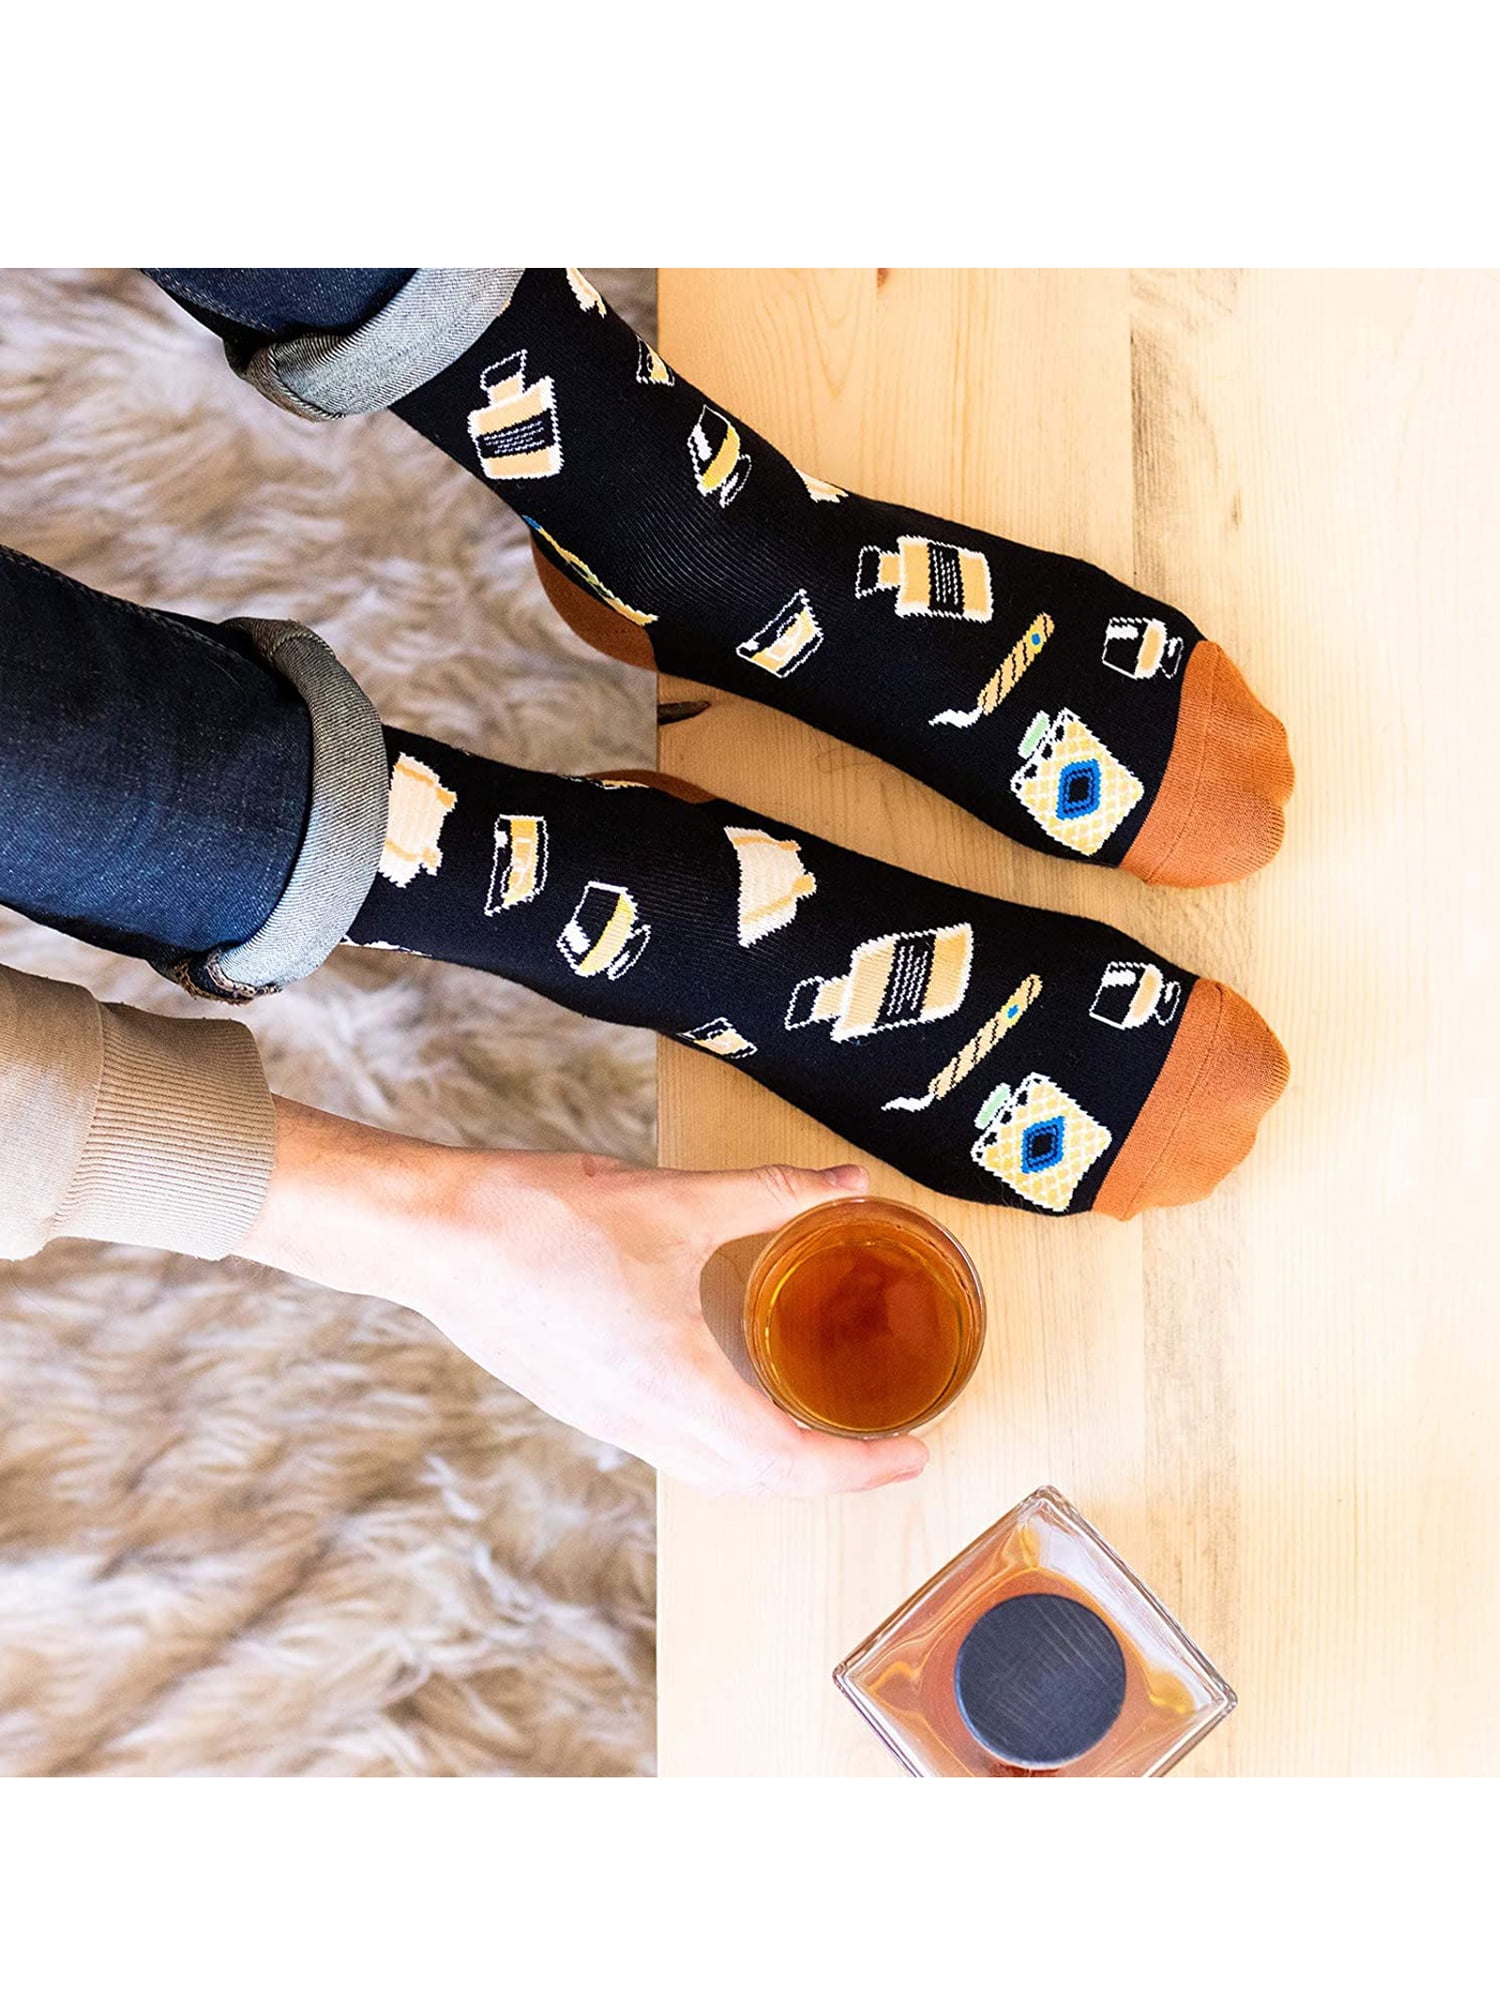 BrilliantMe Funny Novelty Socks for Men Women Christmas Stocking